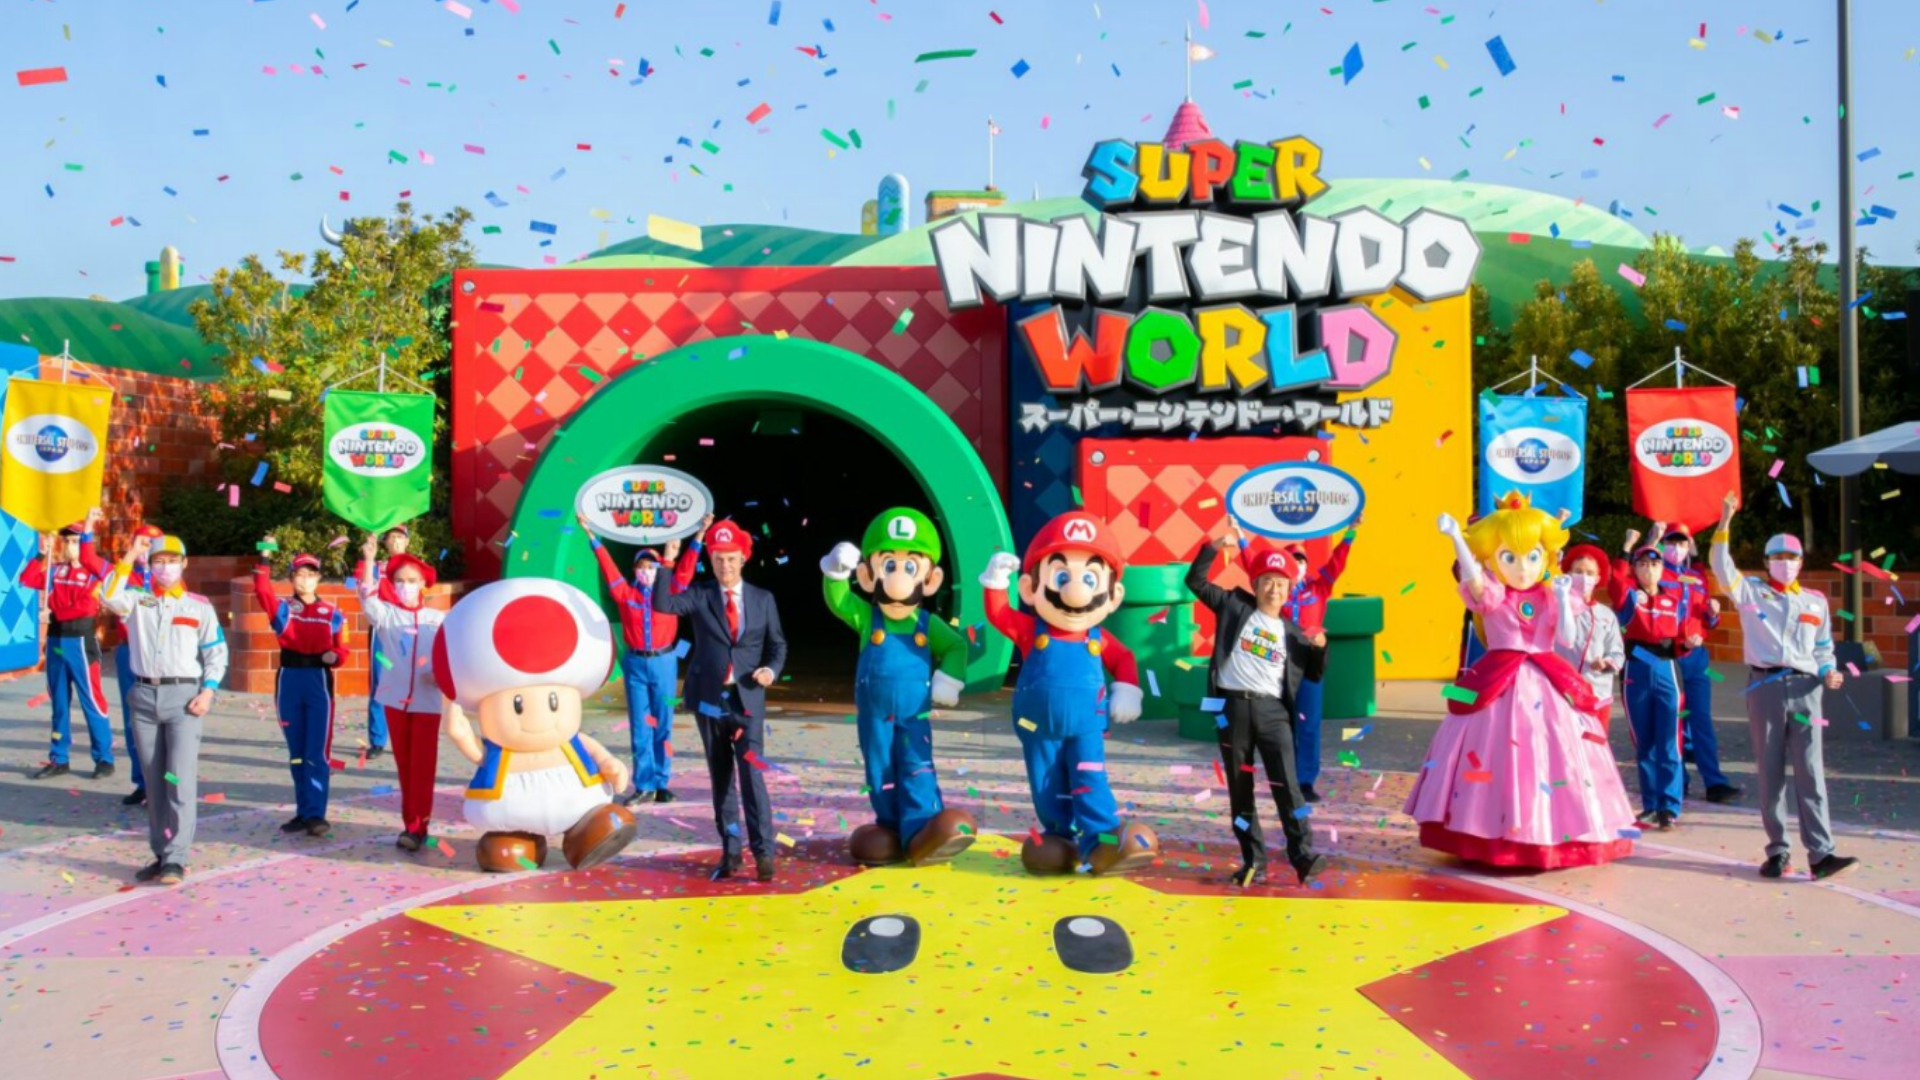 Por fin se estrena el parque de Super Nintendo World